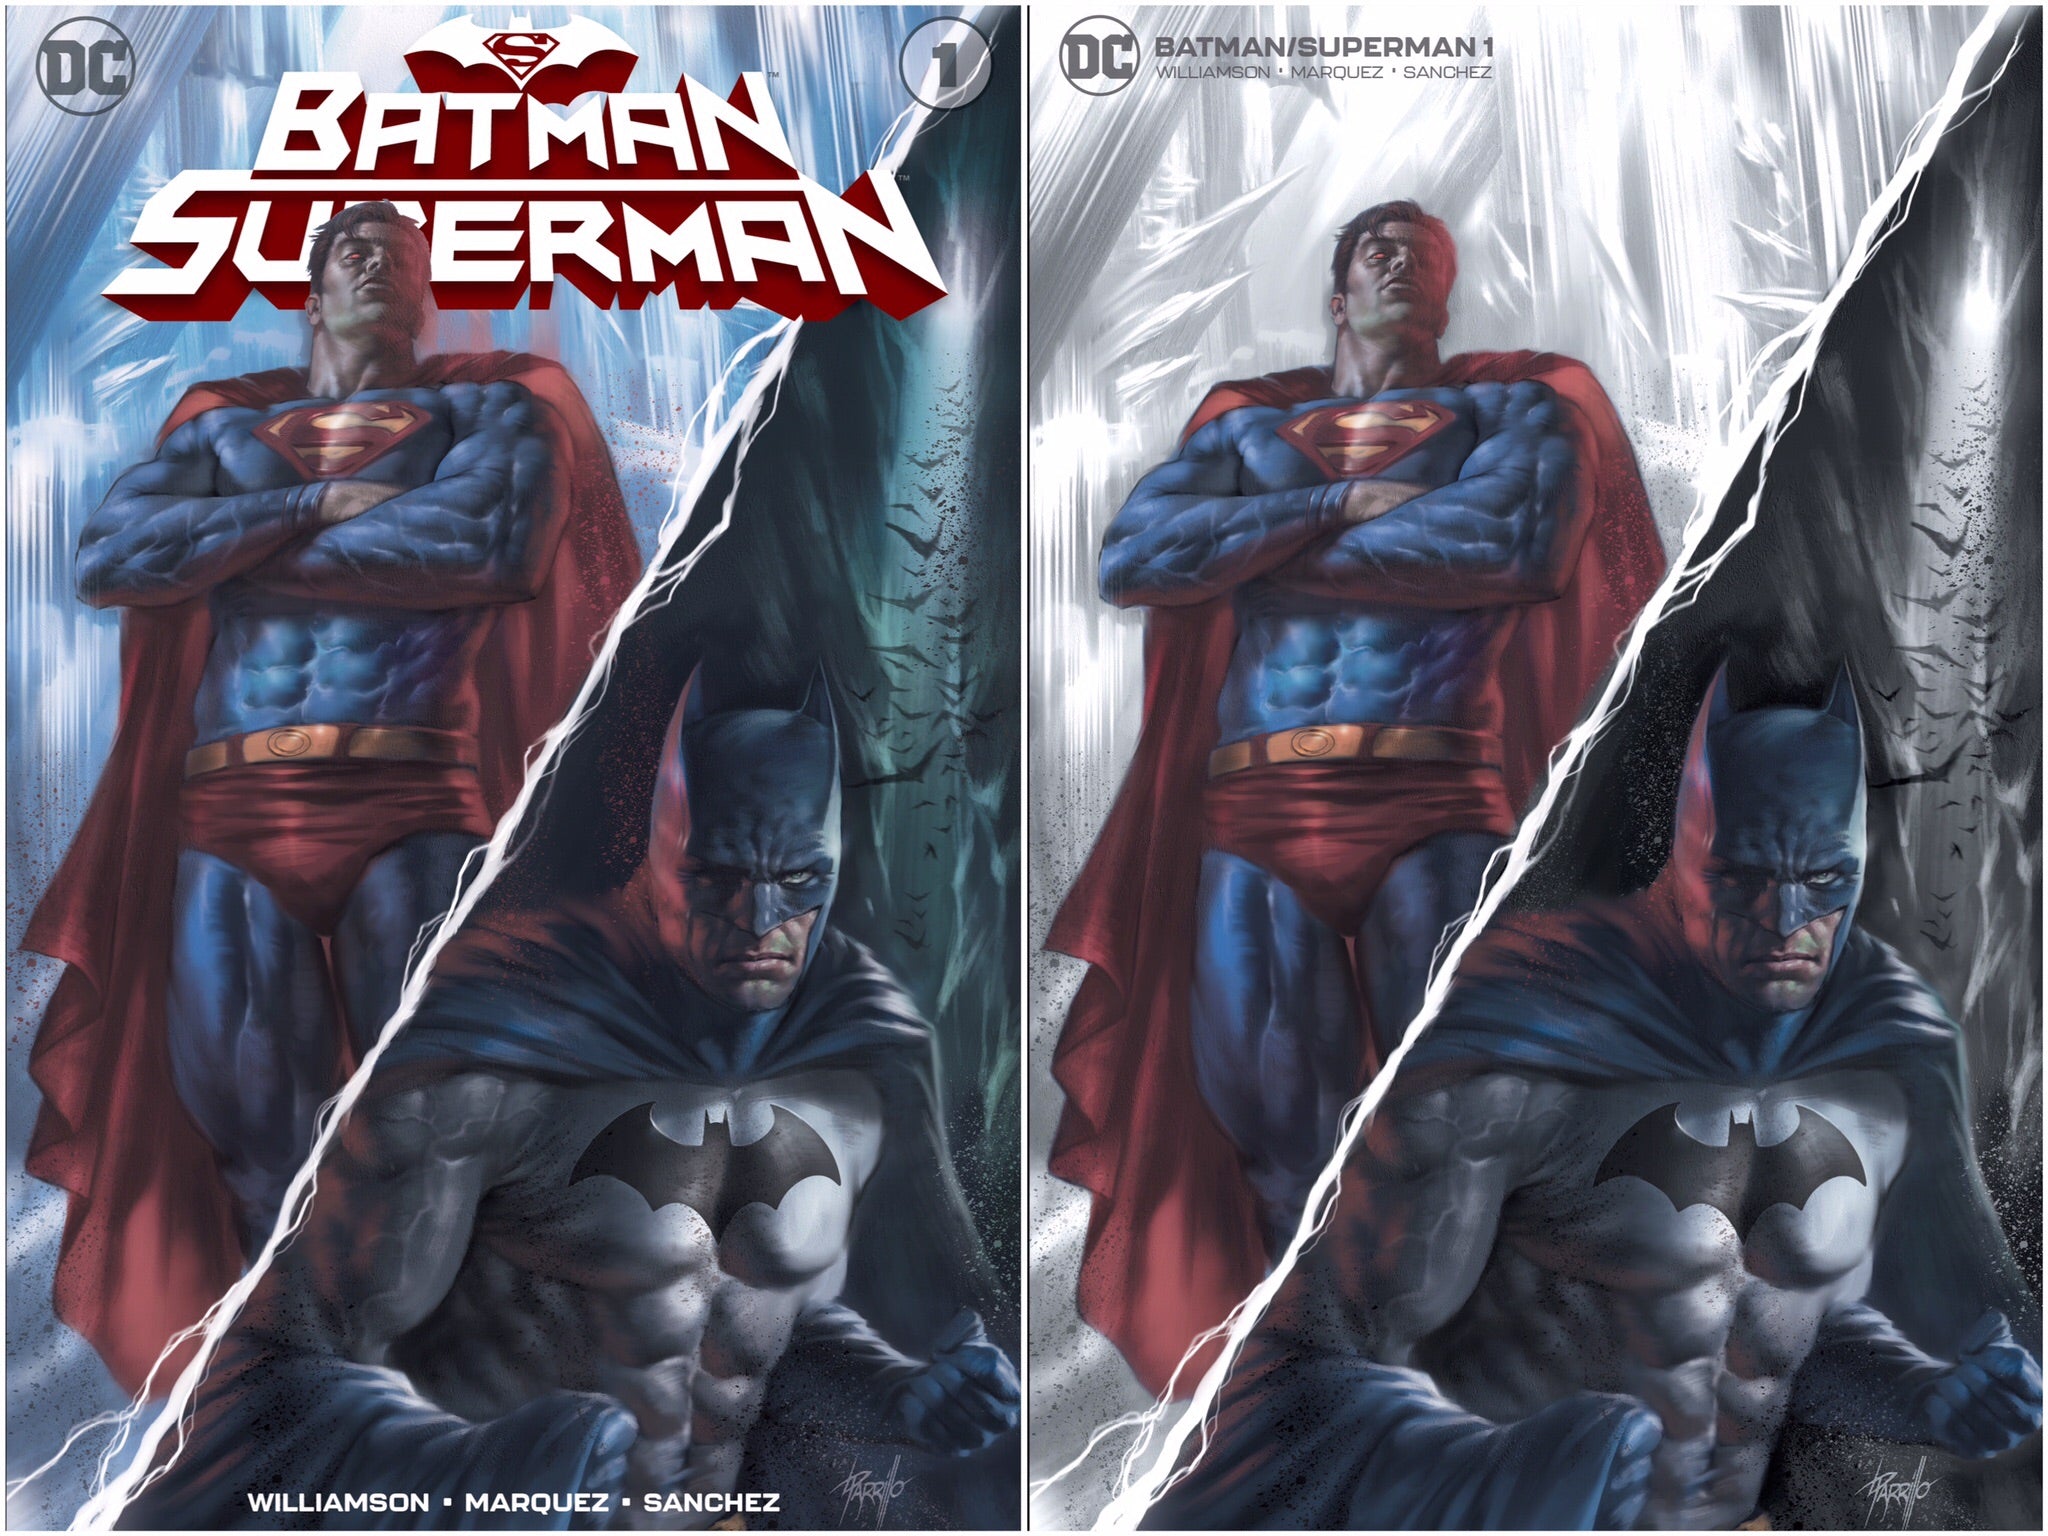 BATMAN SUPERMAN #1 LUCIO PARILLO EXCLUSIVE VARIANT COVER